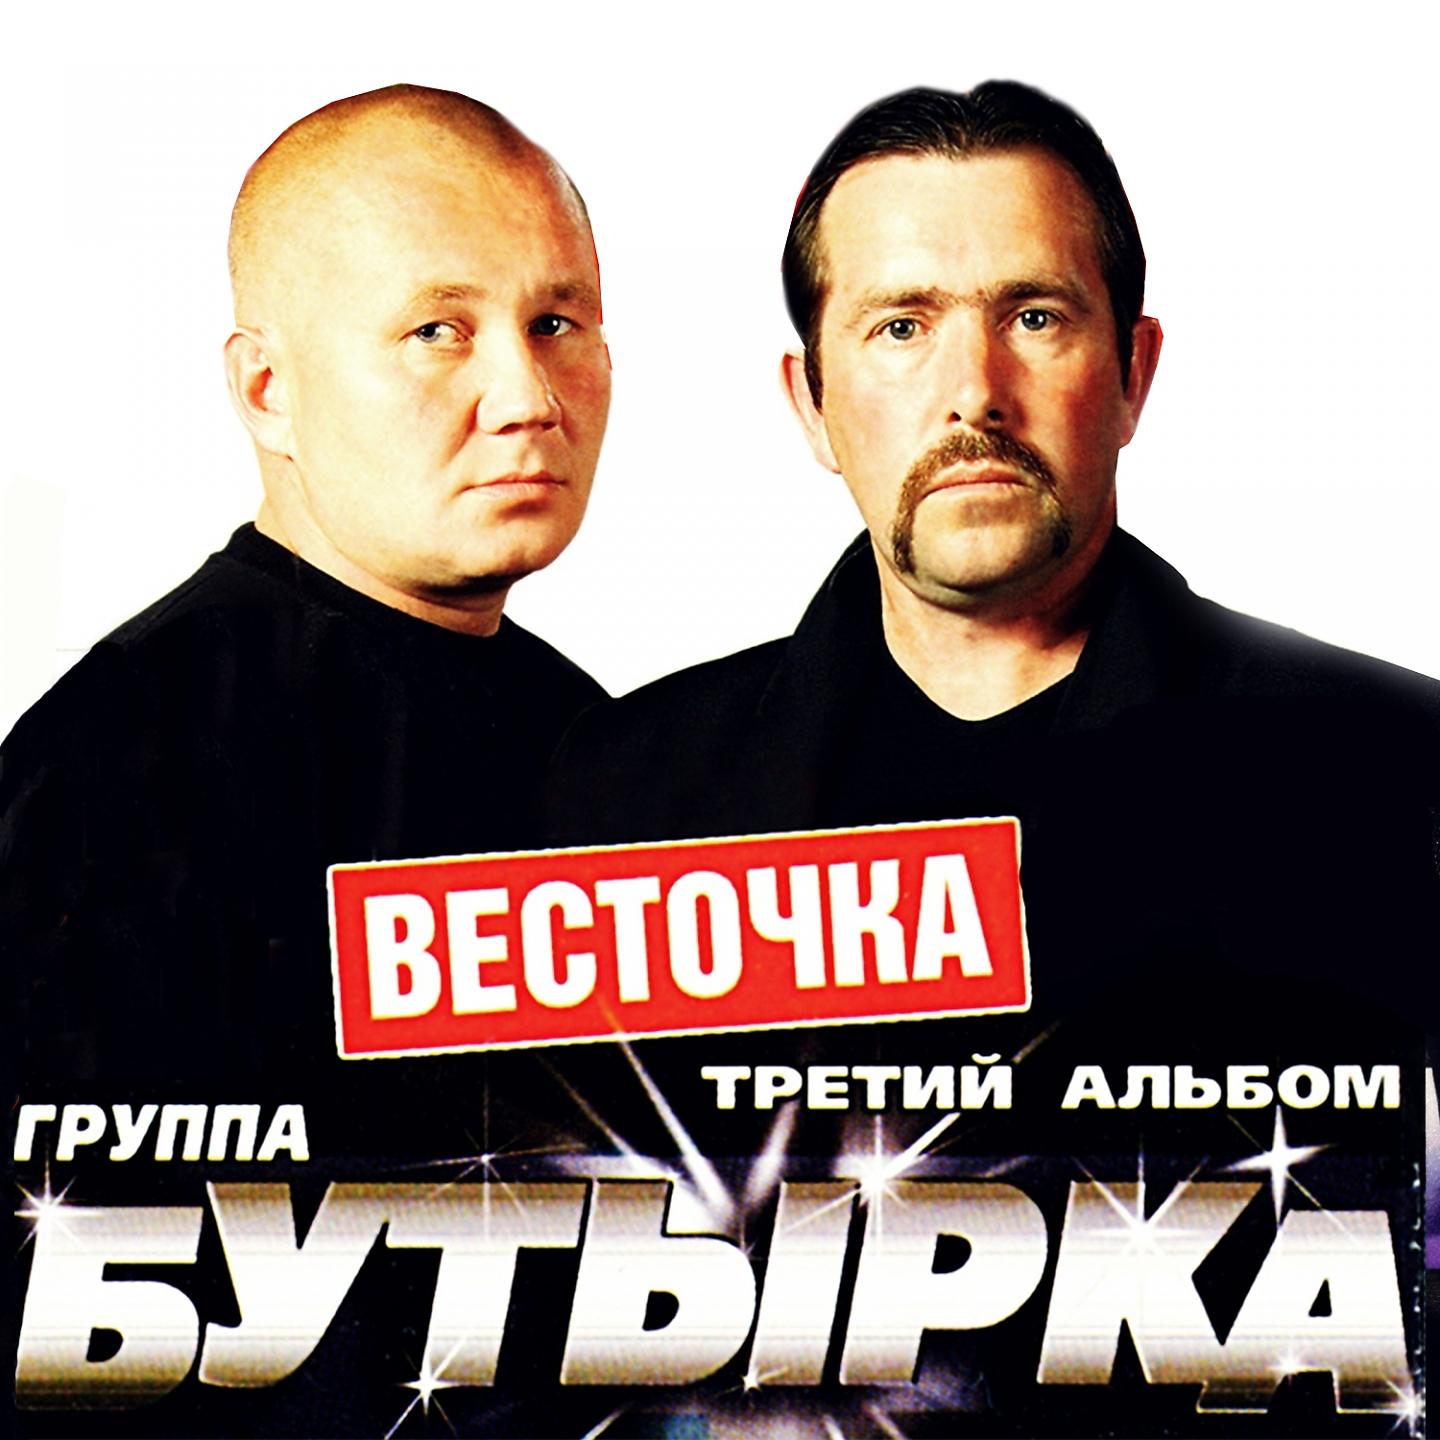 Бутырка - 2004 - весточка - третий альбом